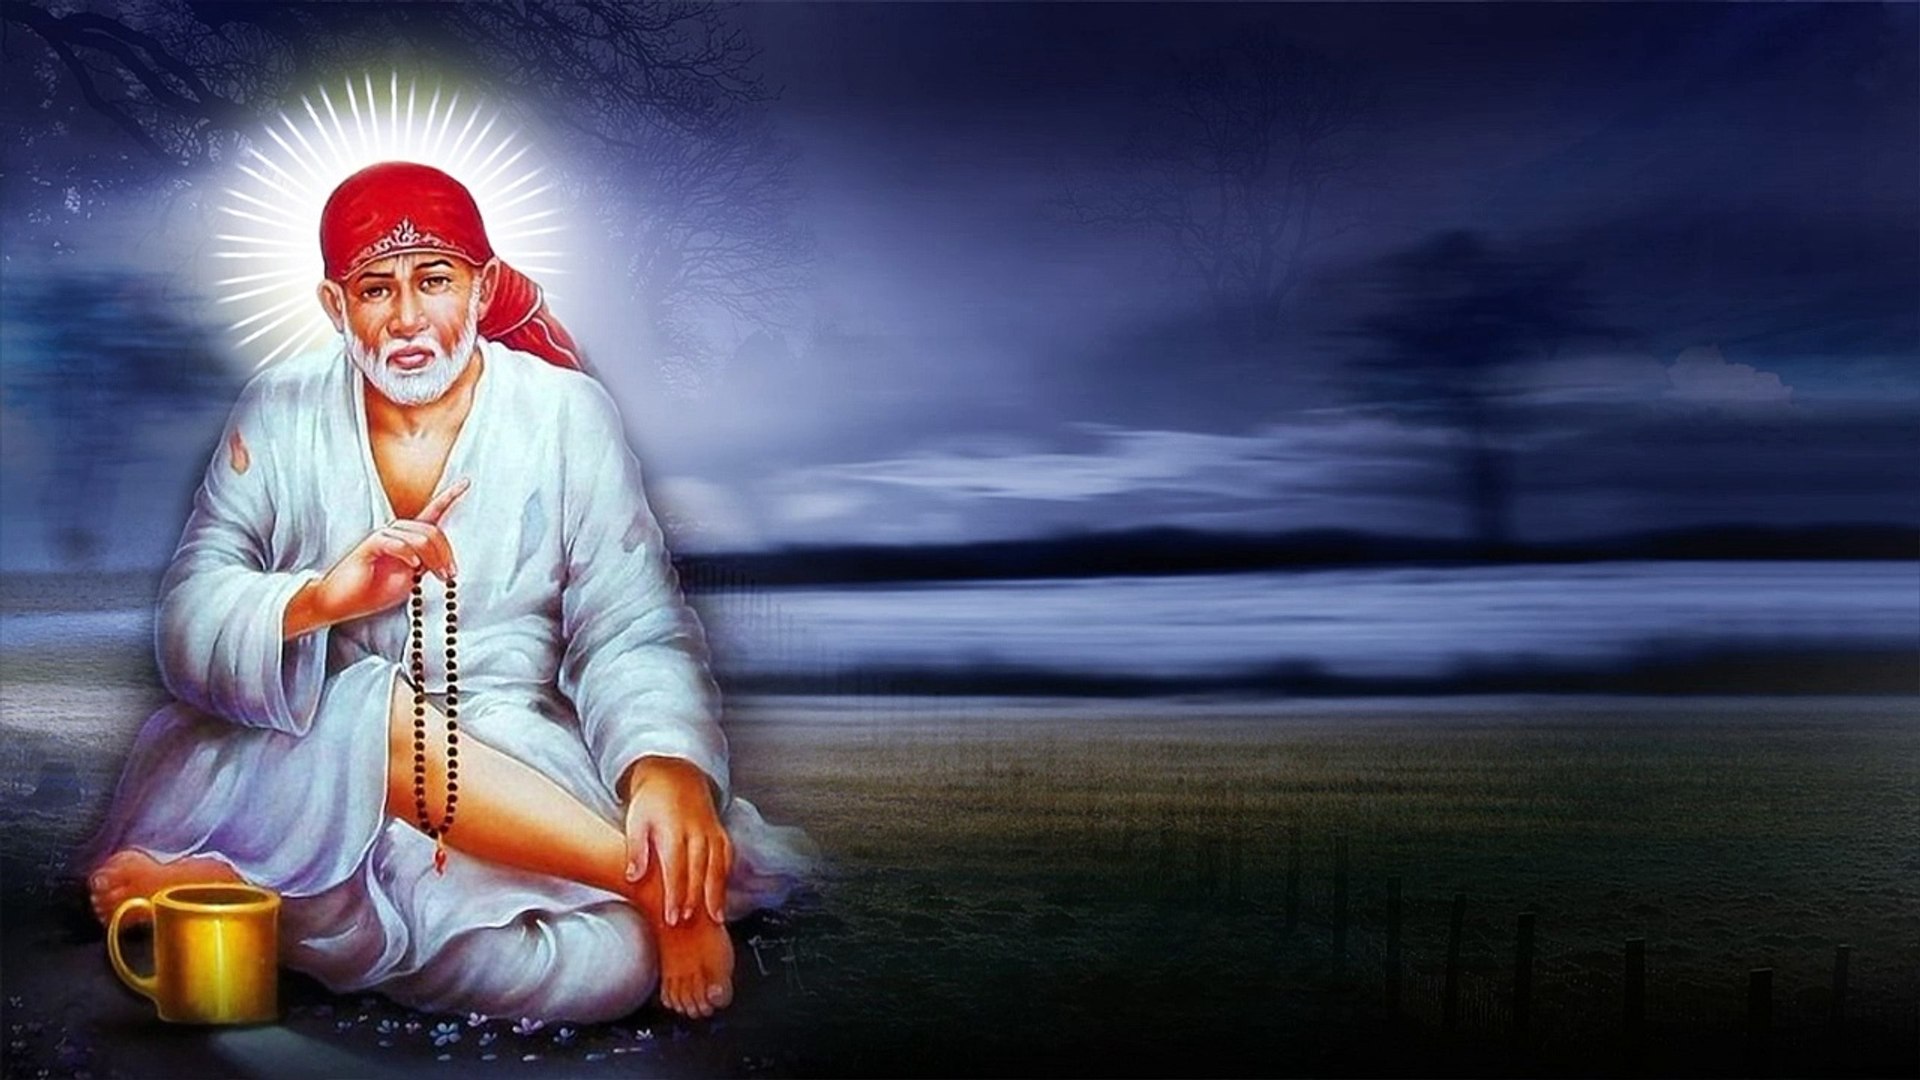 Shirdi Sai Baba Background | Free Download | Sai Baba Free Background |  Free Copyright Video - video Dailymotion